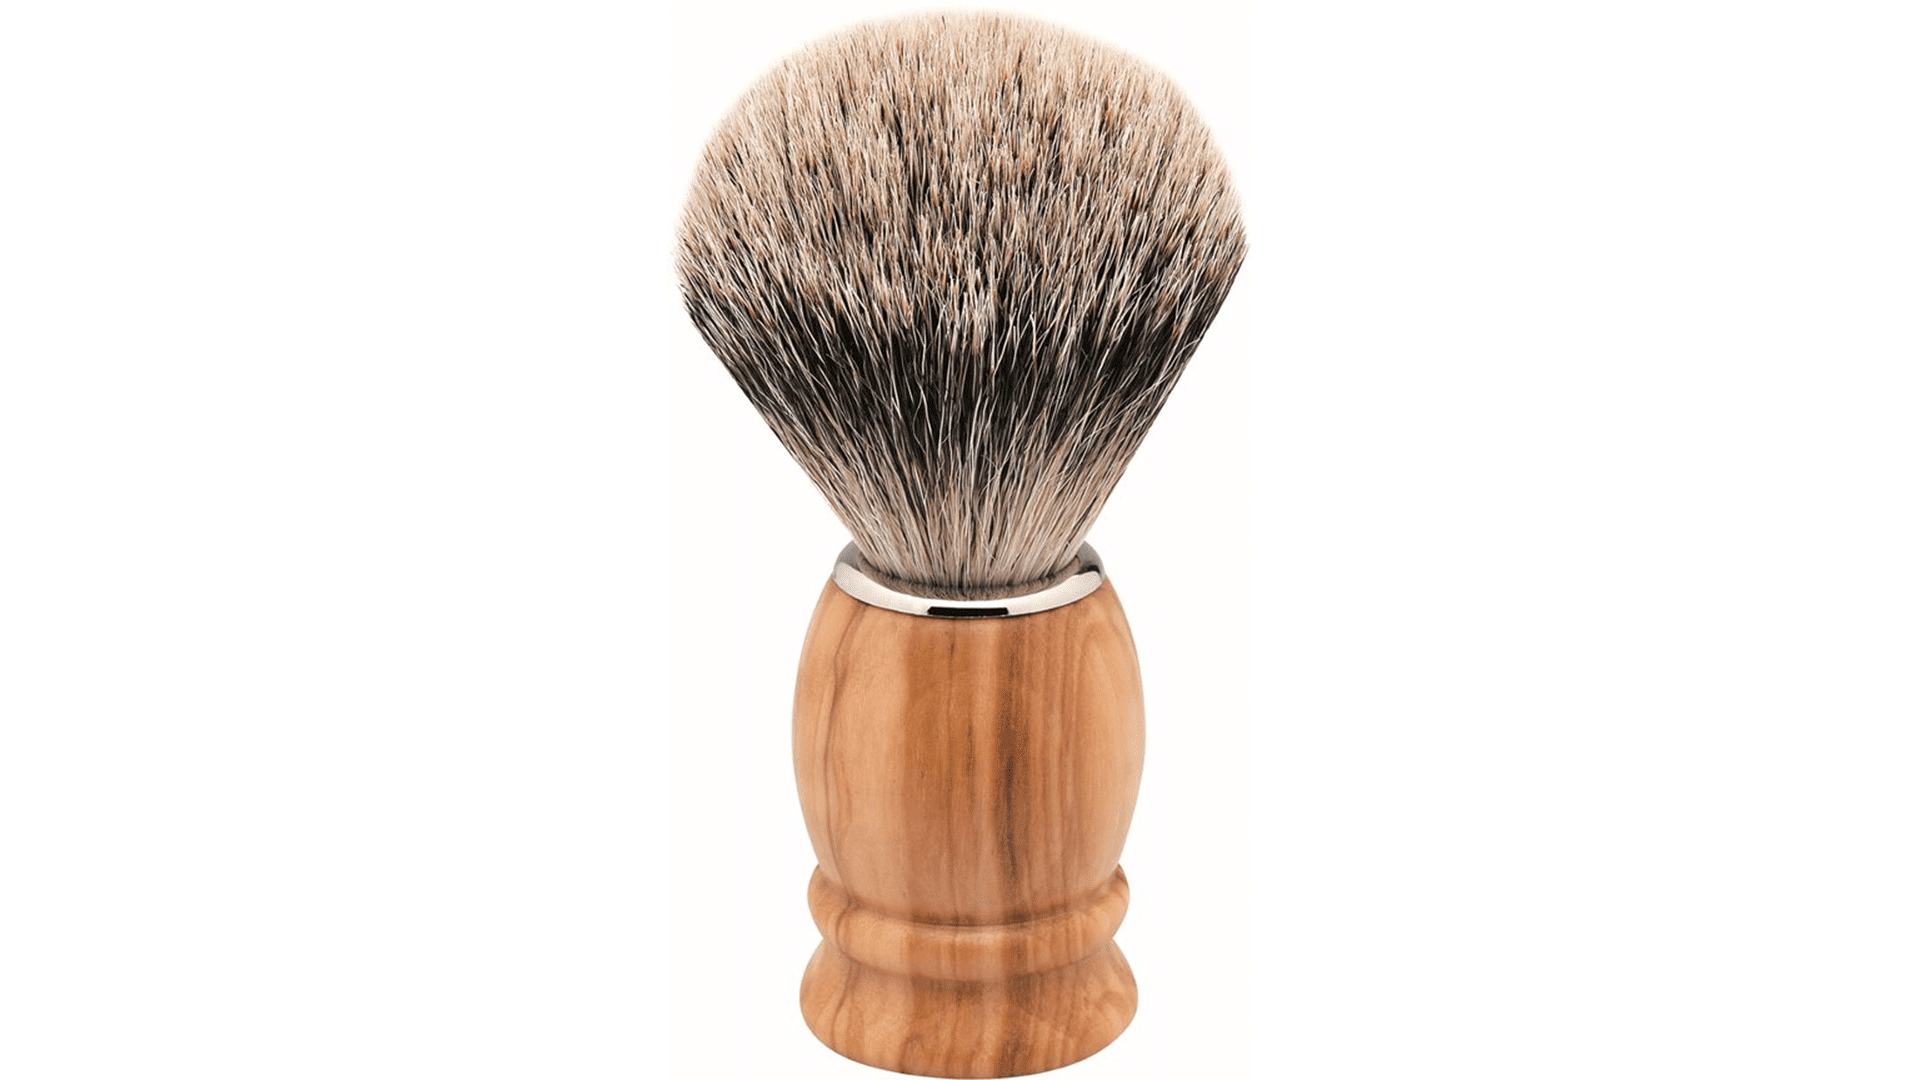 Erbe shaving brush badger hair olive wood L